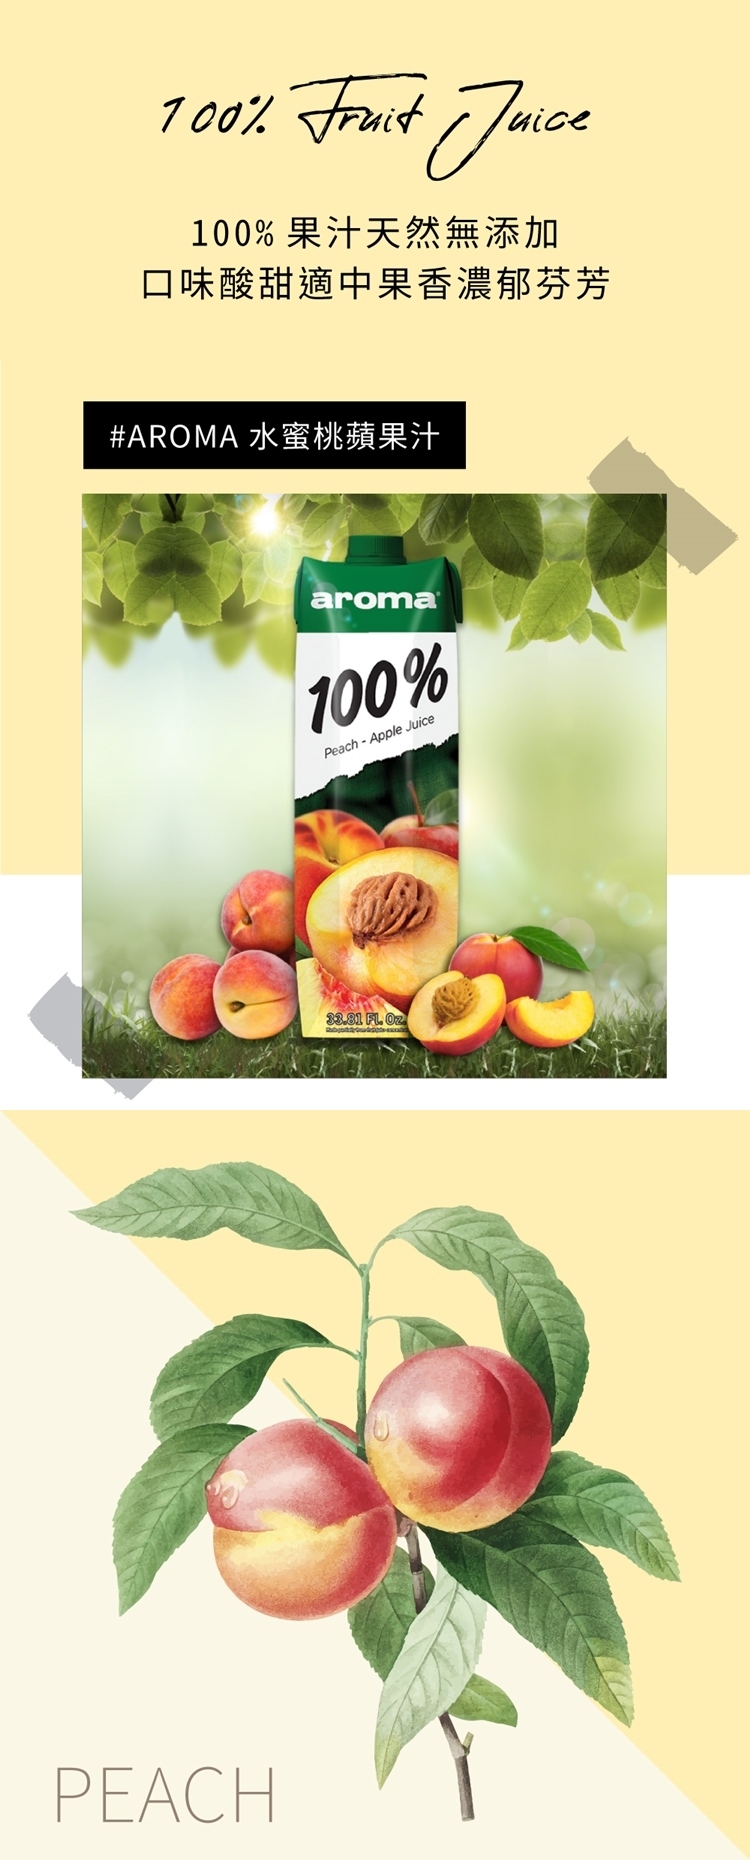 699免運土耳其AROMA100%水蜜桃蘋果汁1000mlx12瓶箱購